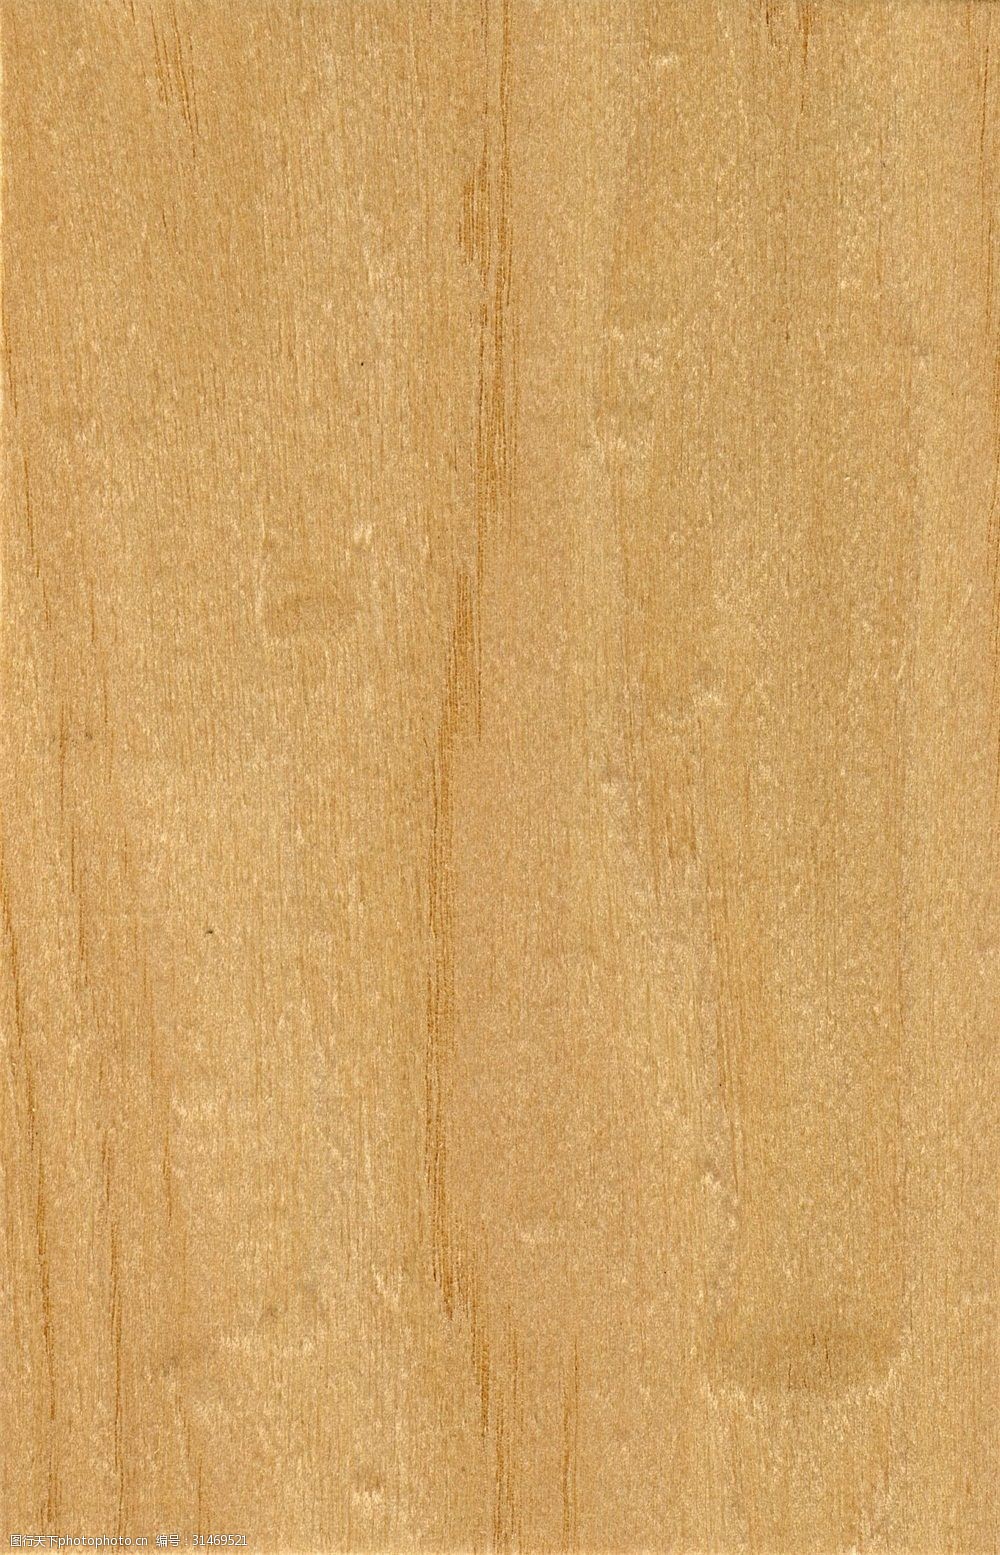 木纹木材 关键词:简约时尚的白色木材纹理贴图 木纹木地板材质贴图